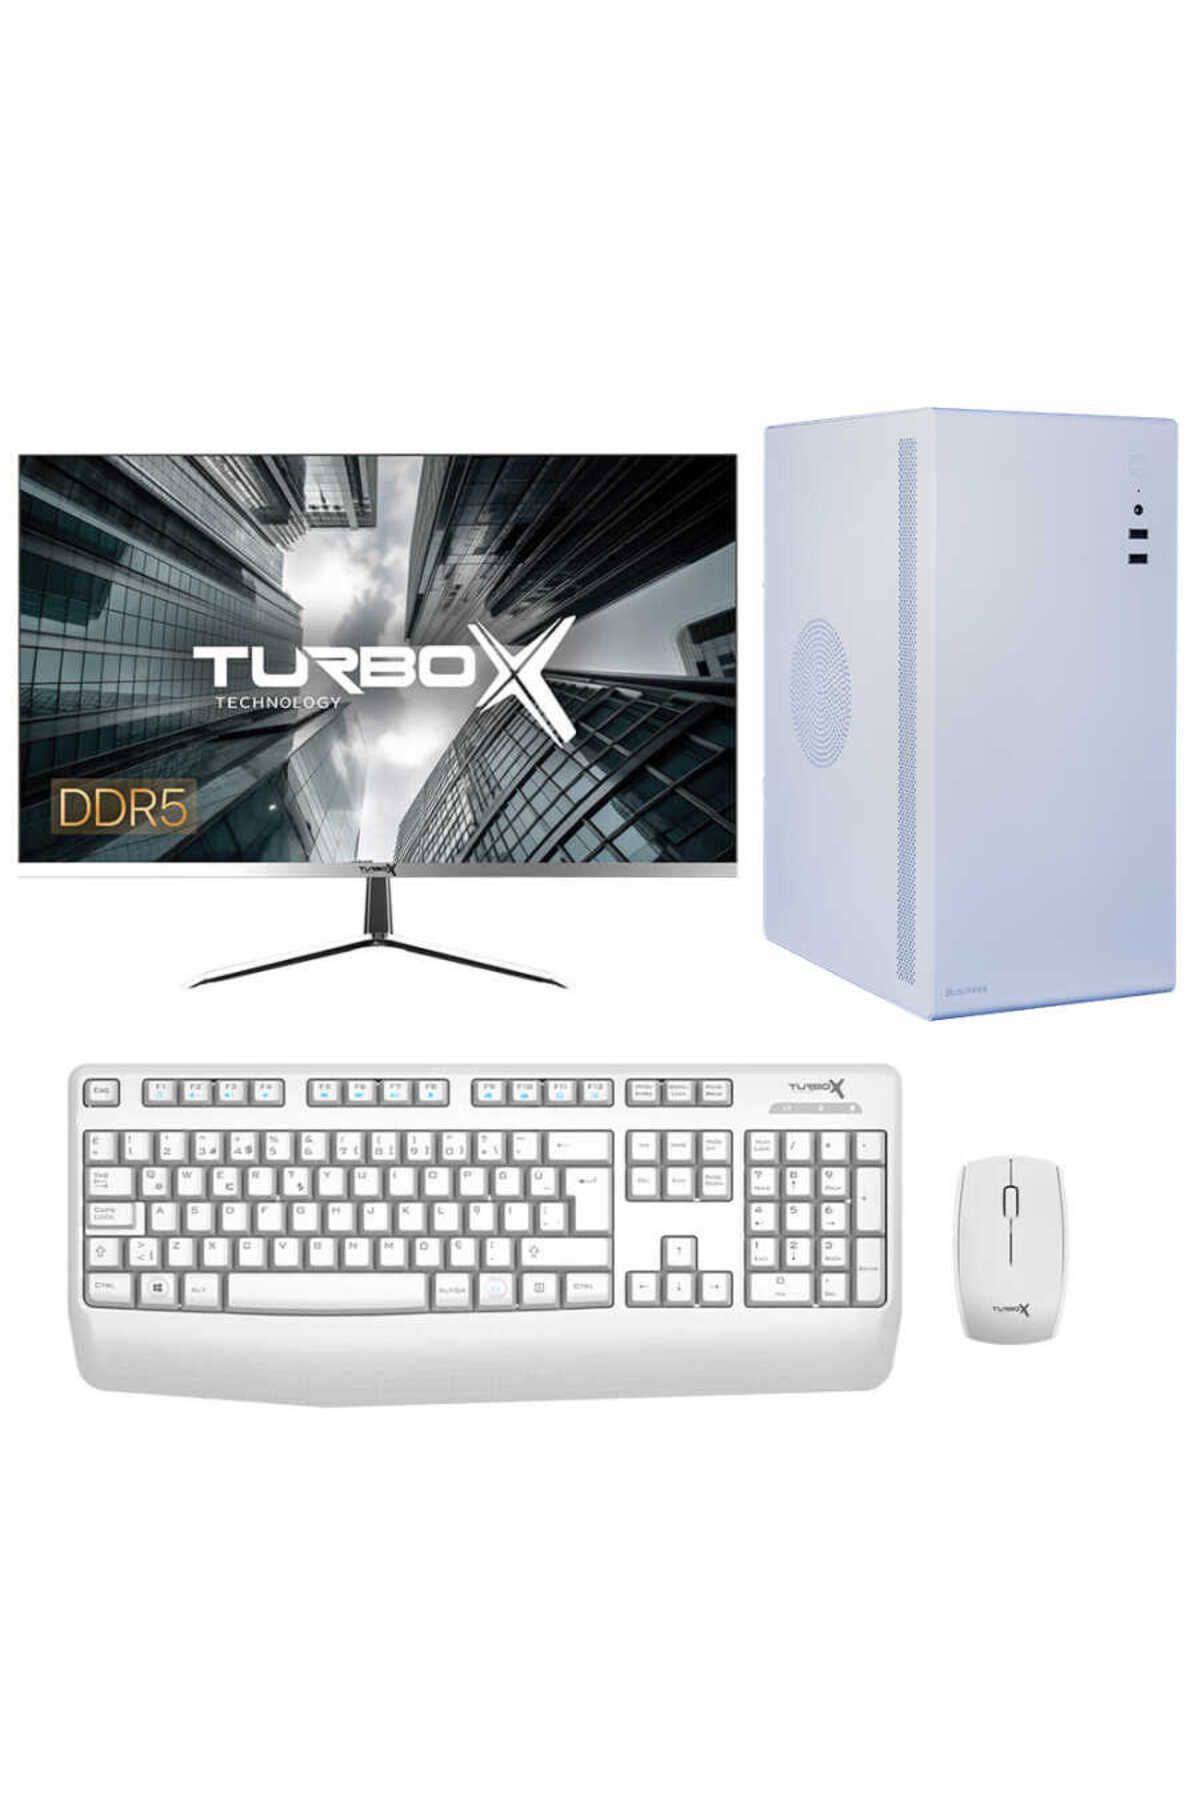 TURBOX Tx4753 Intel Core i3 13100 16GB DDR5 Ram 512GB NVMe 23.8 inç FHD Monitör Ofis Bilgisayarı